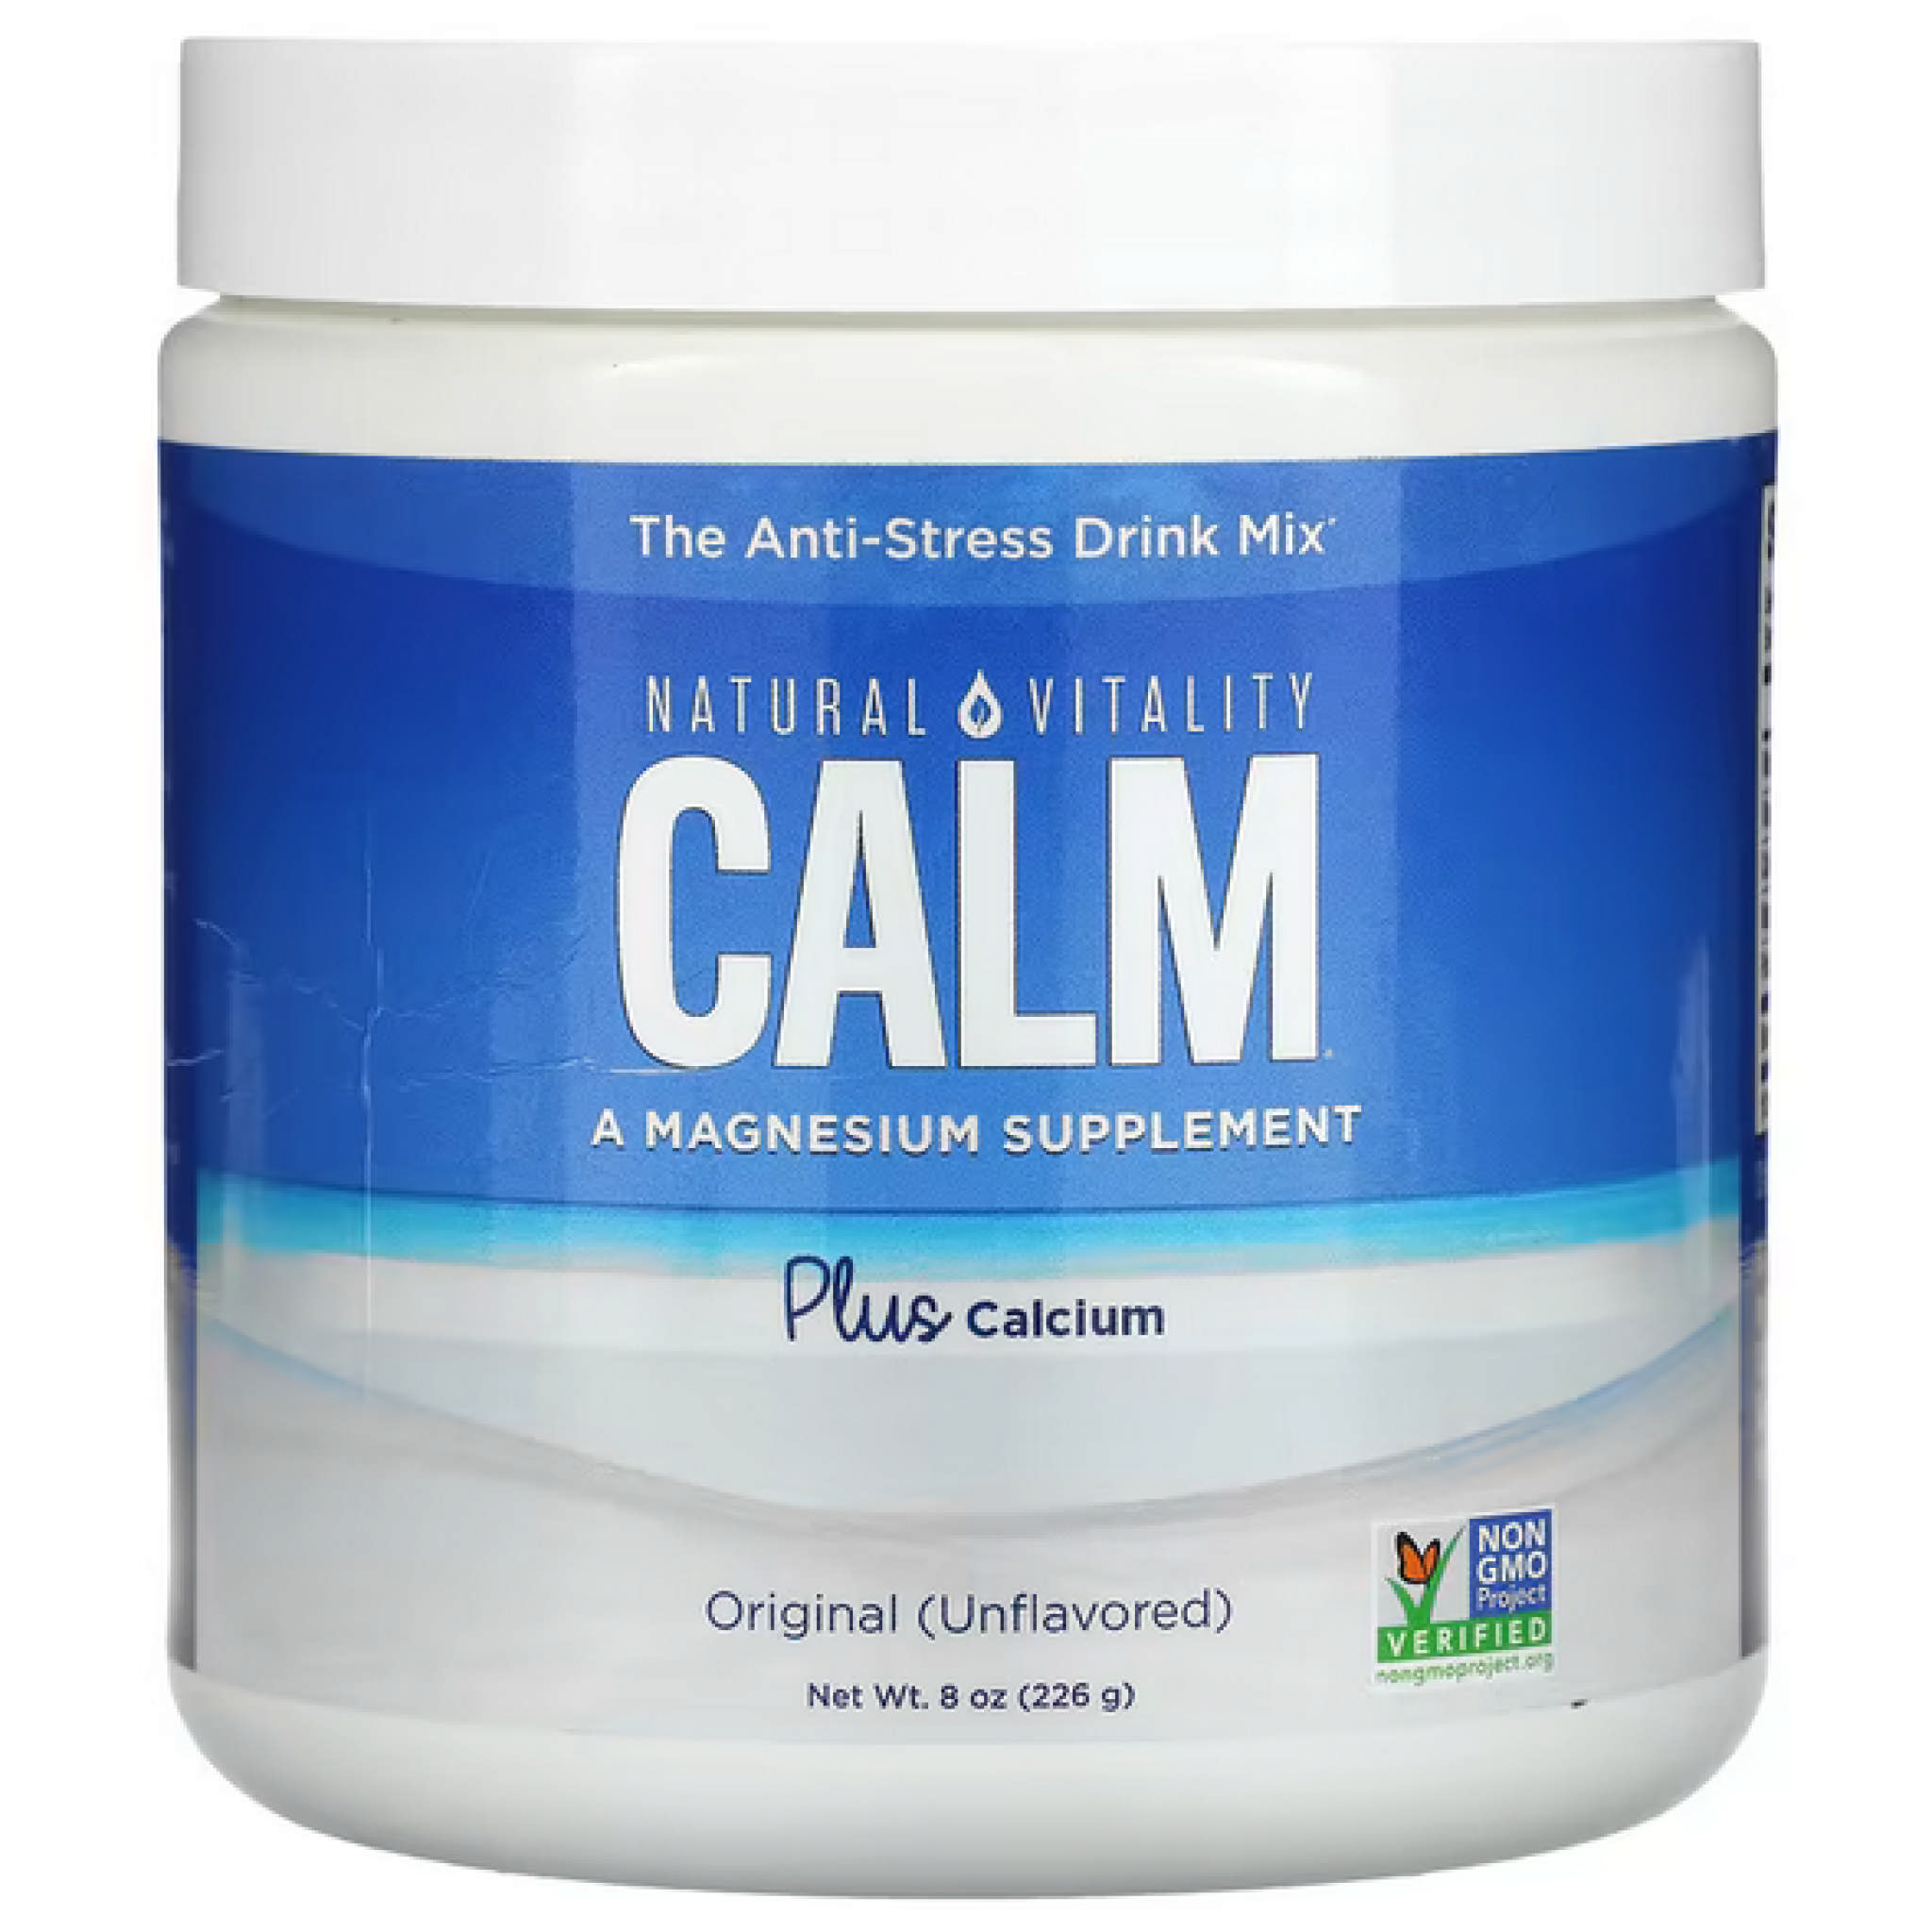 Natural Vitality - Calm Plus Calcium powder